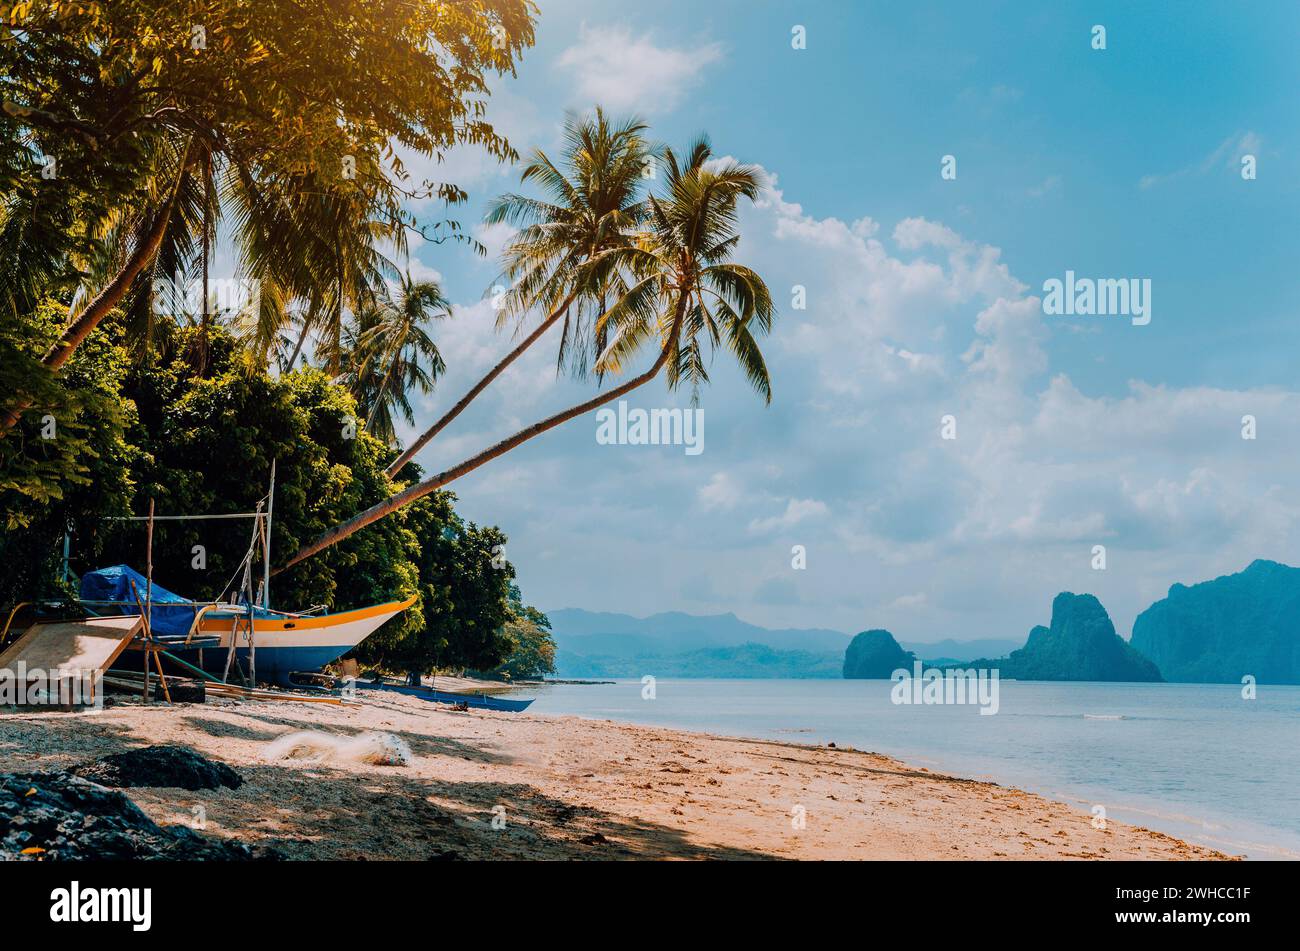 Banca bateau sur la rive sous les palmiers.île tropicale paysage pittoresque. El-Nido, Palawan, Philippines, Asie du Sud-est Banque D'Images